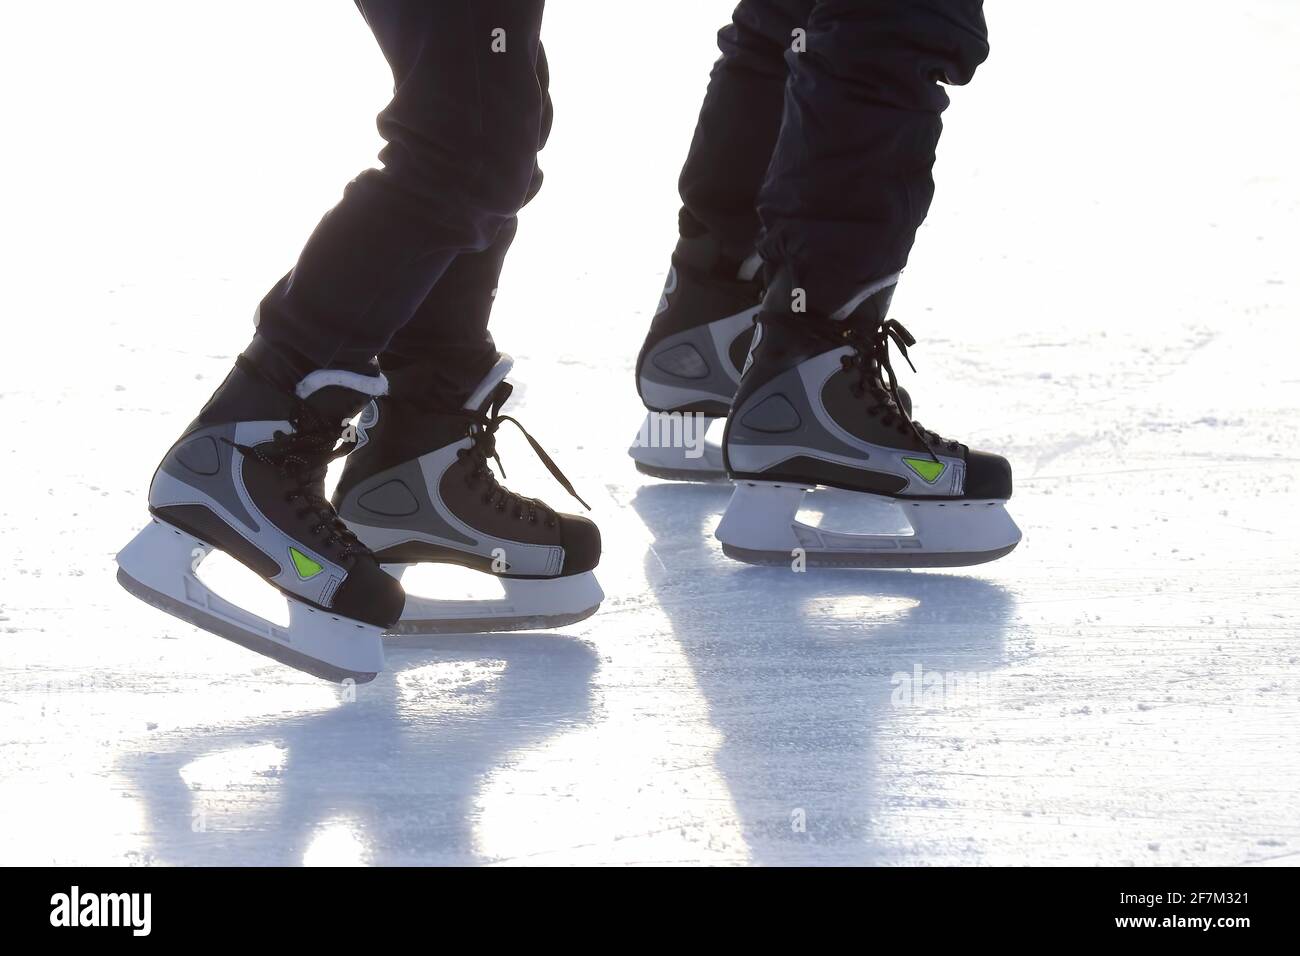 les pieds de différentes personnes patinant sur la patinoire Banque D'Images